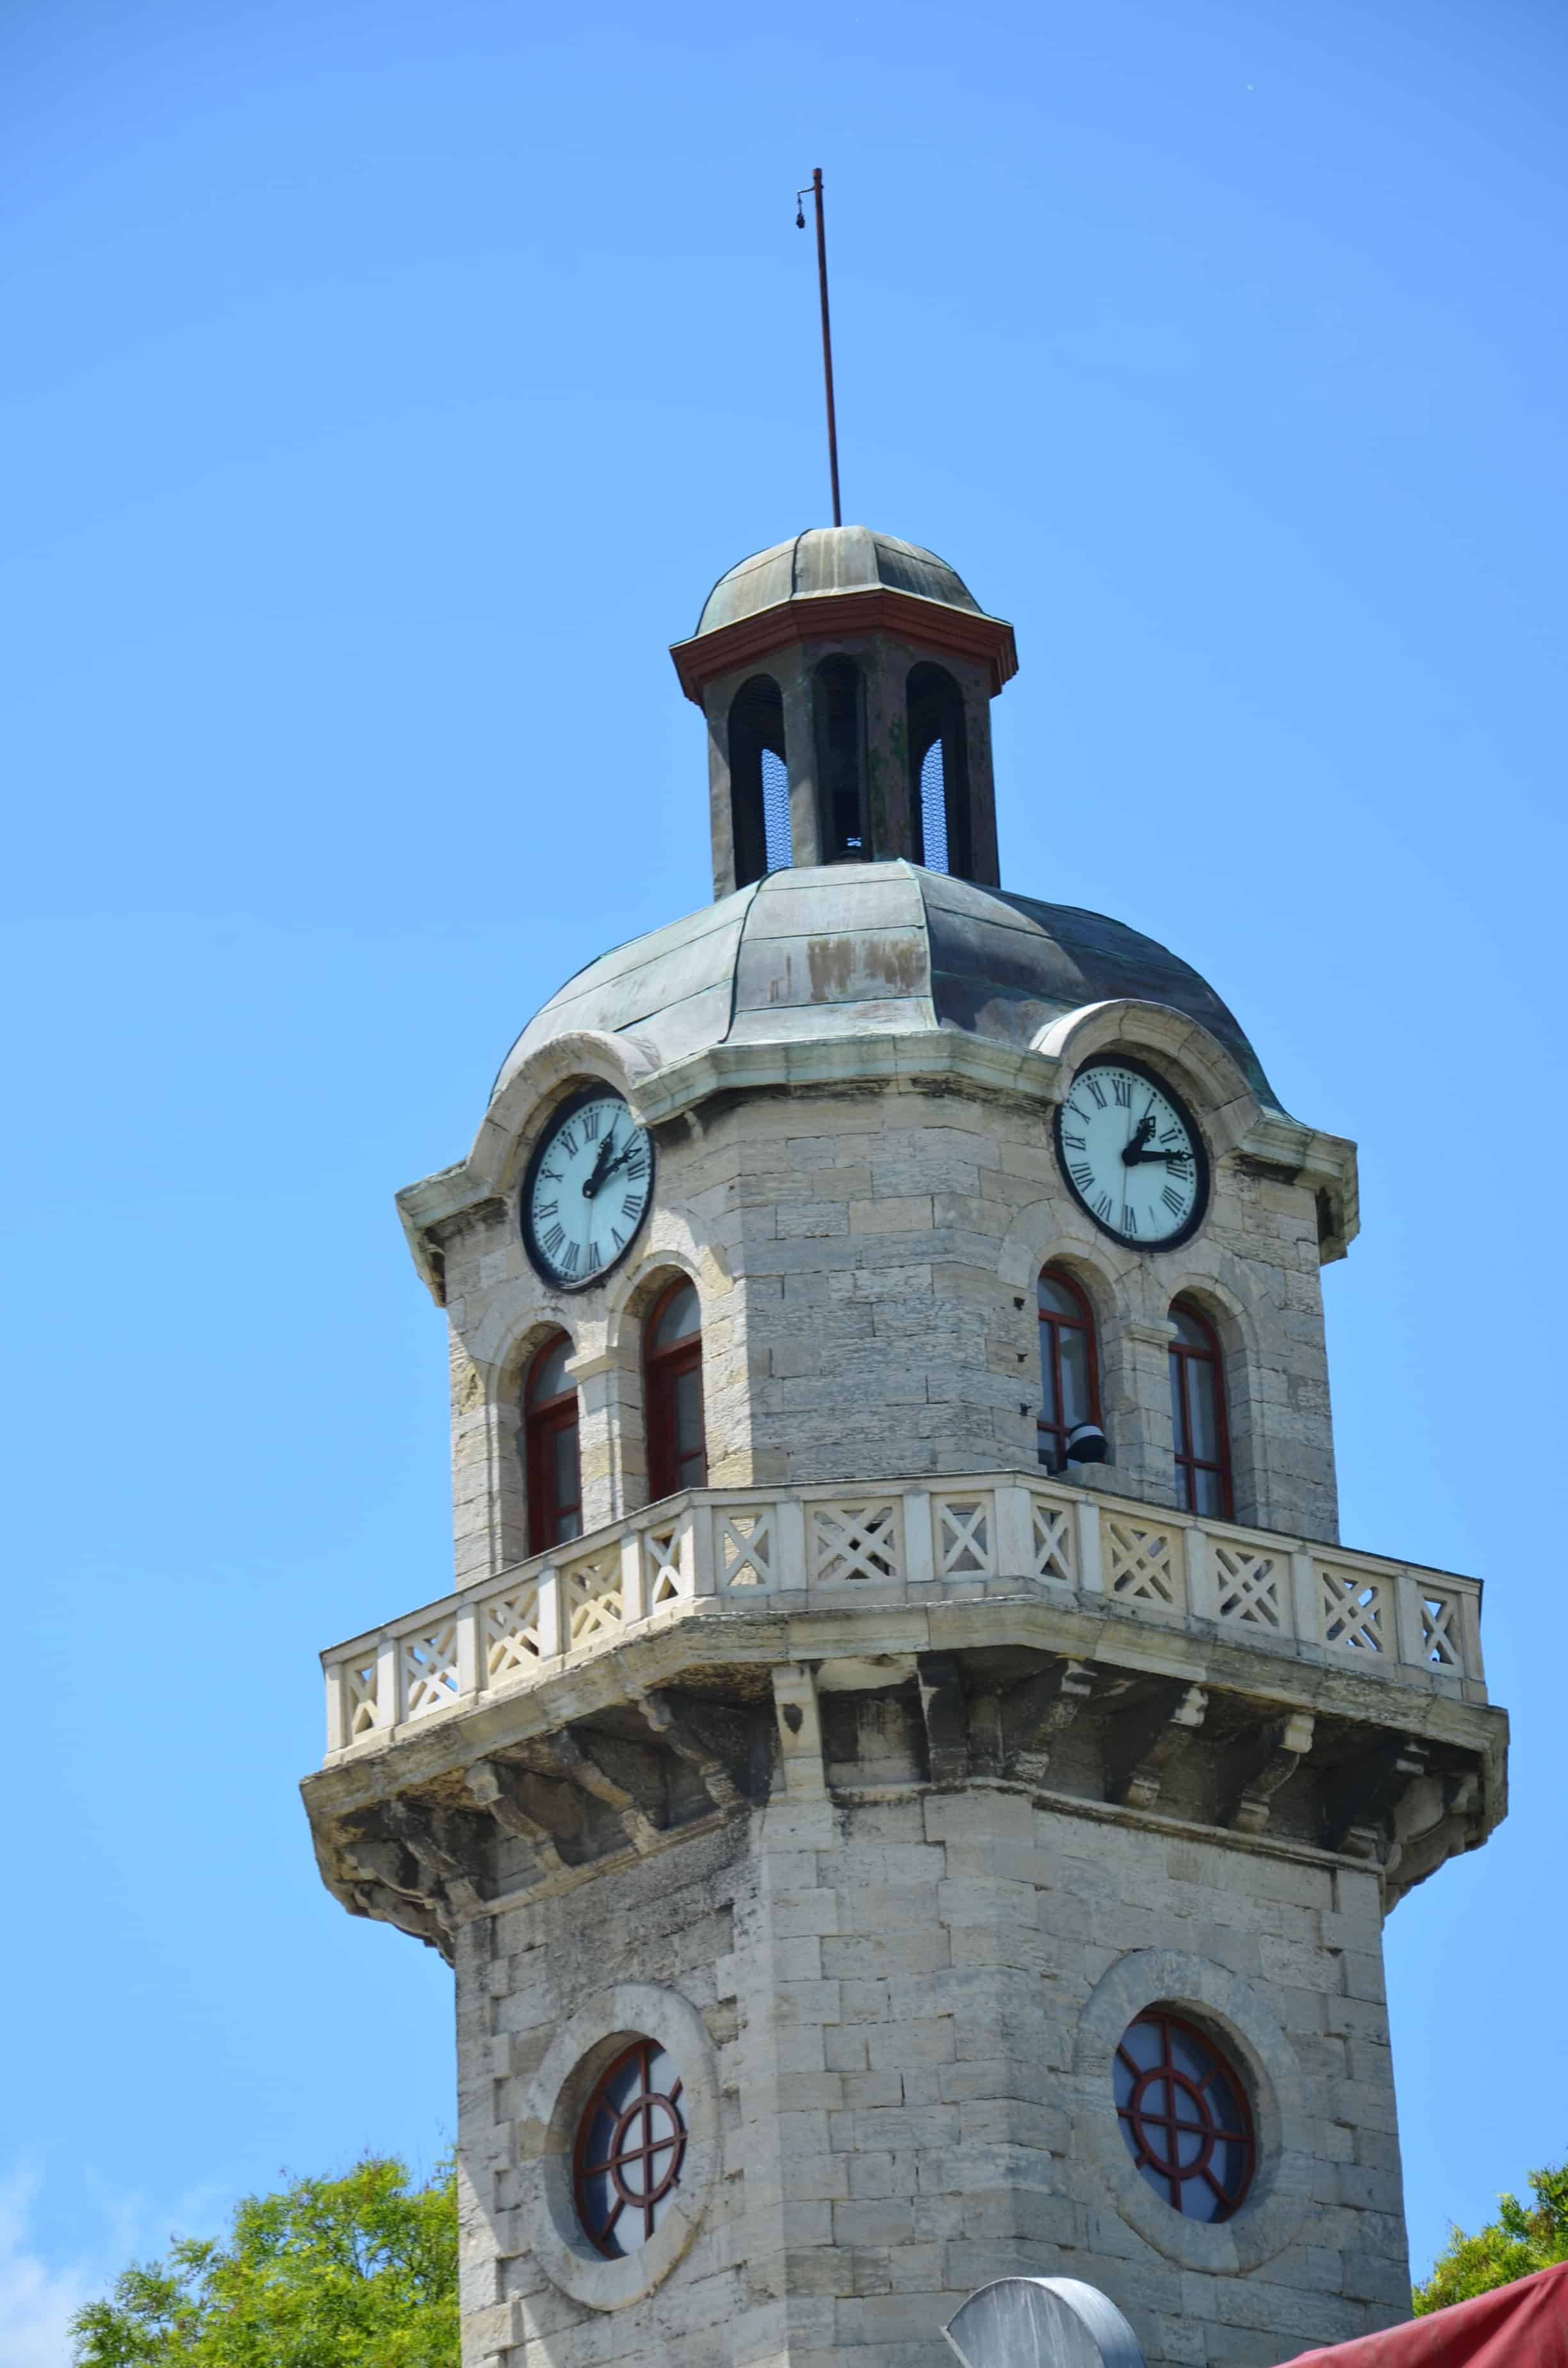 Clock tower in Varna, Bulgaria